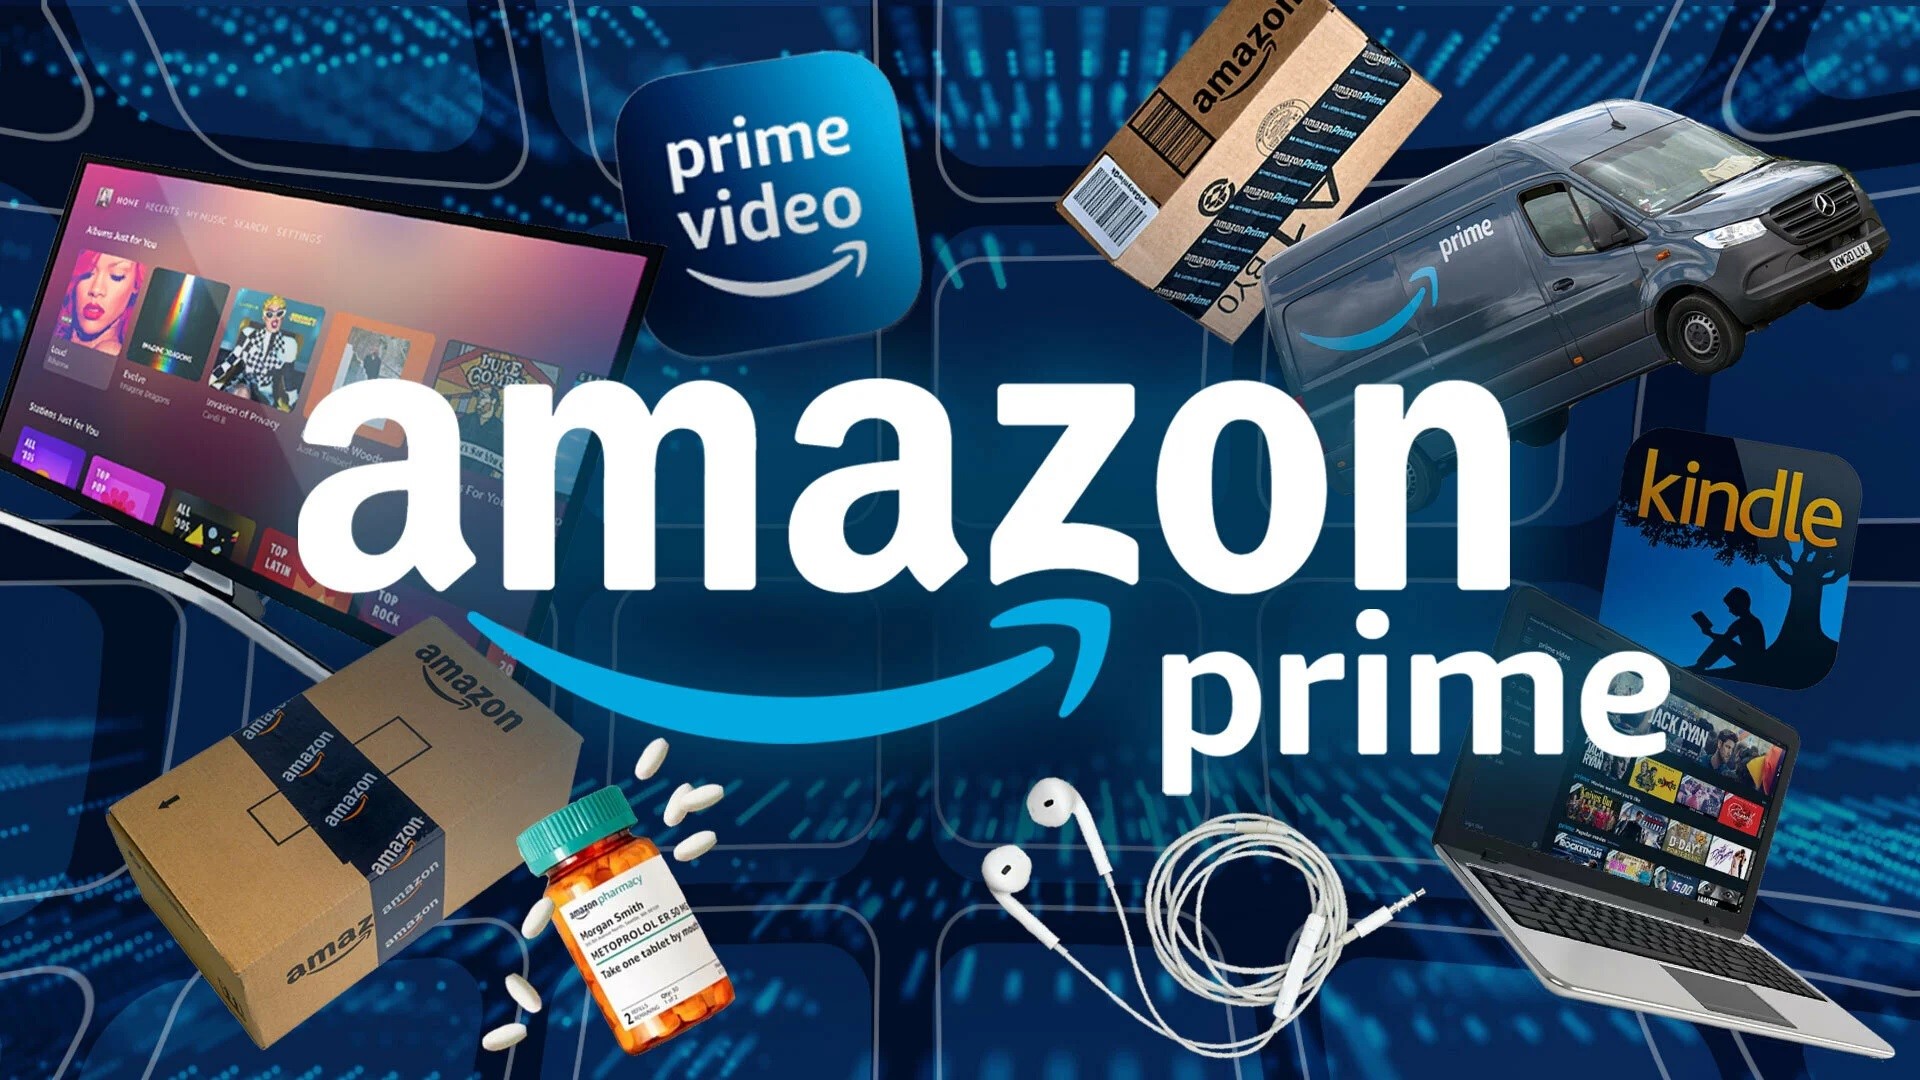 Amazon sonda il servizio cellulare gratis per gli abbonati Prime